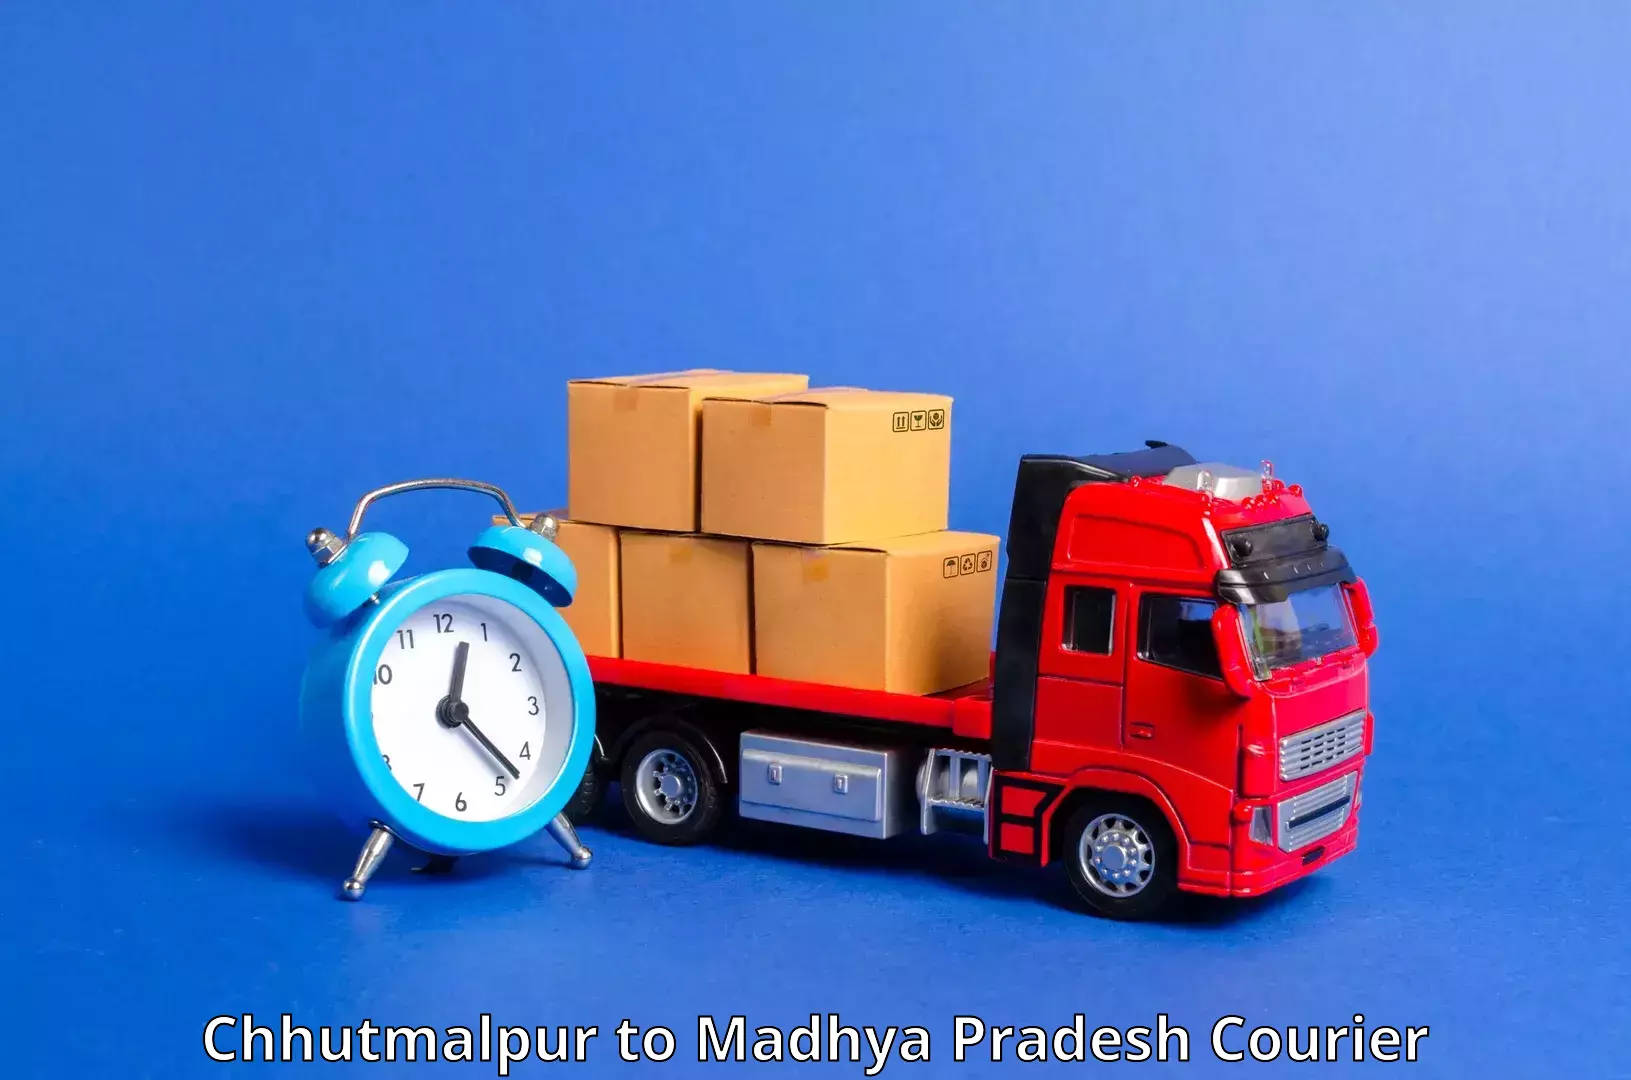 Cargo courier service Chhutmalpur to Dewas